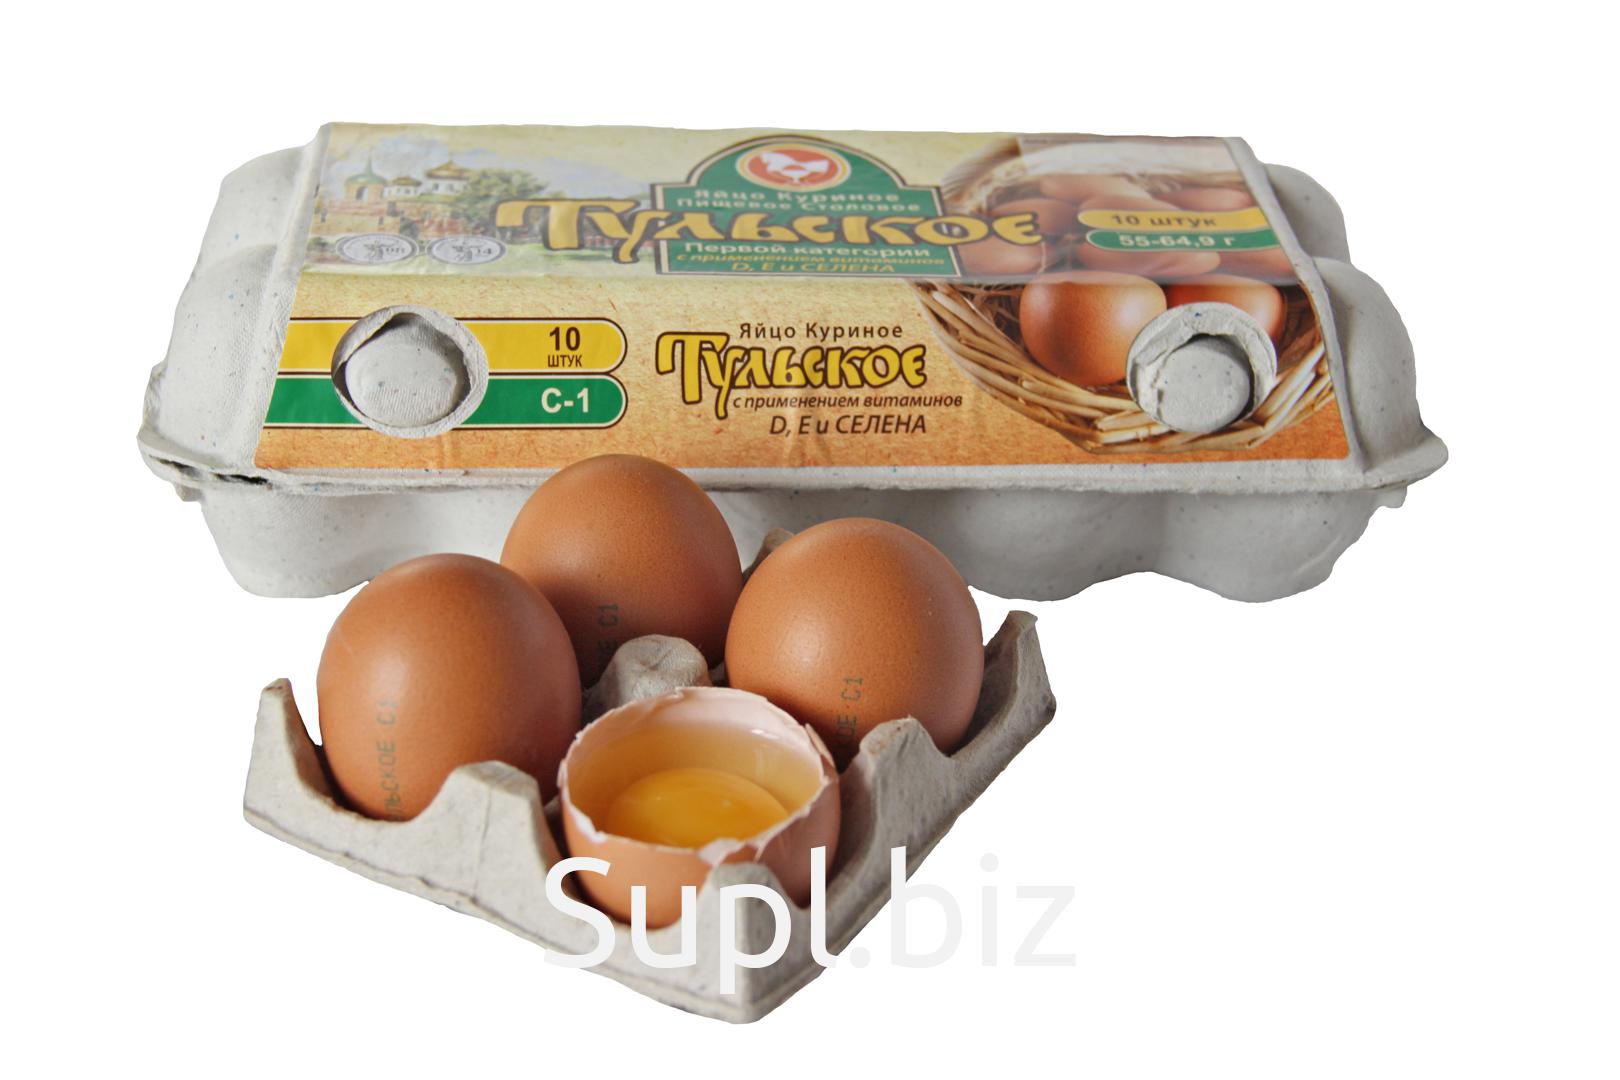 Яйцо тульское купить. Яйца Тульская птицефабрика. Яйца c1. Яйцо куриное с1 Чамзинка. Витмаинное яйца c1.